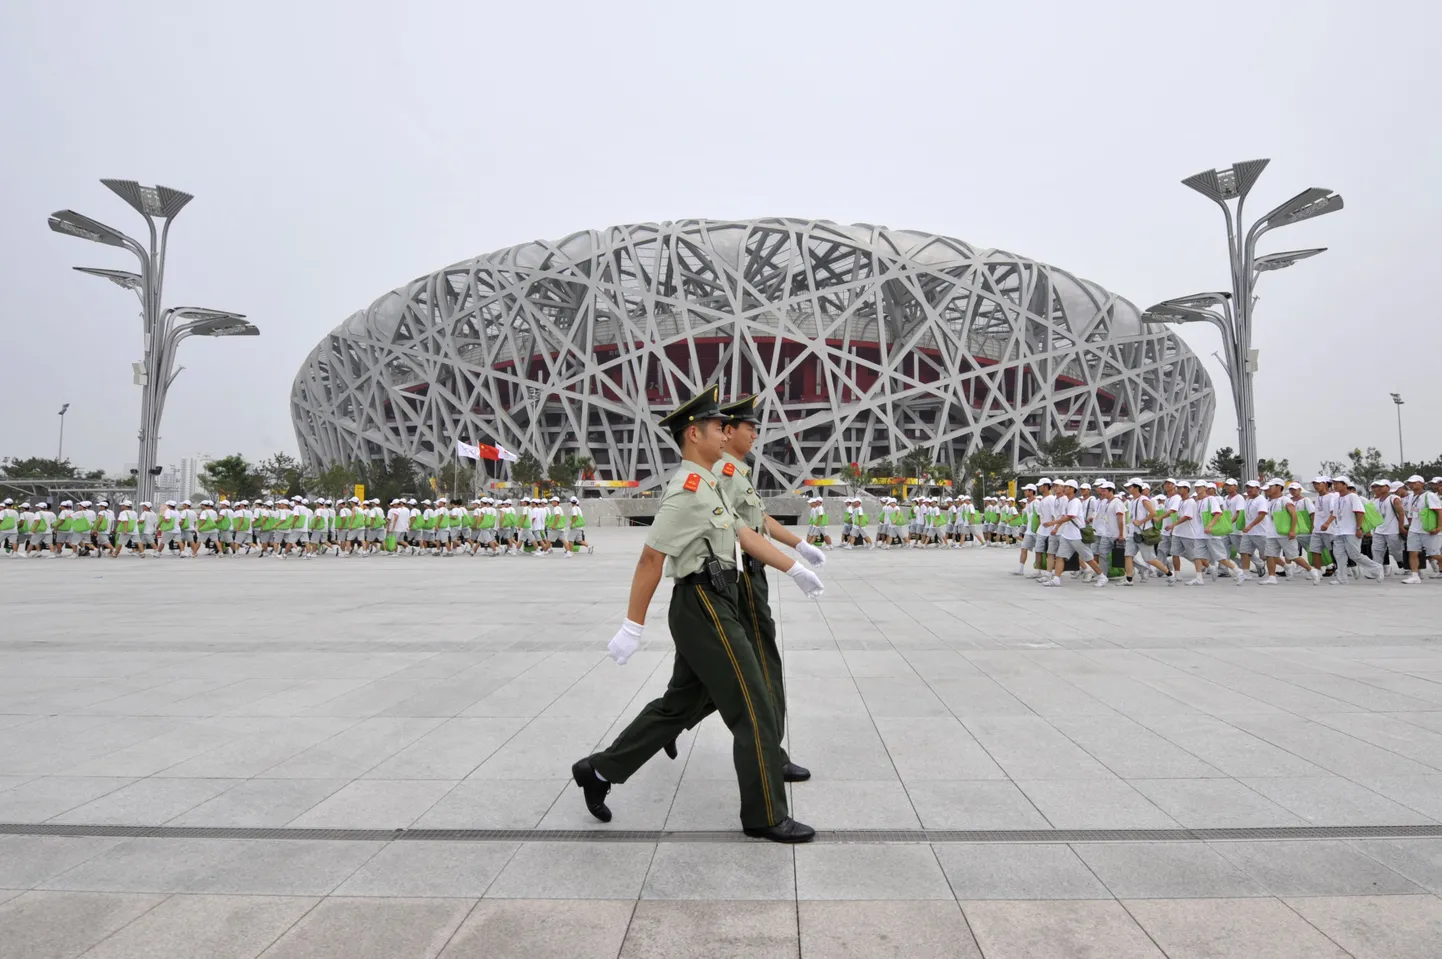 Linnupesana tuntud Pekingi olümpiamängude peaareen.